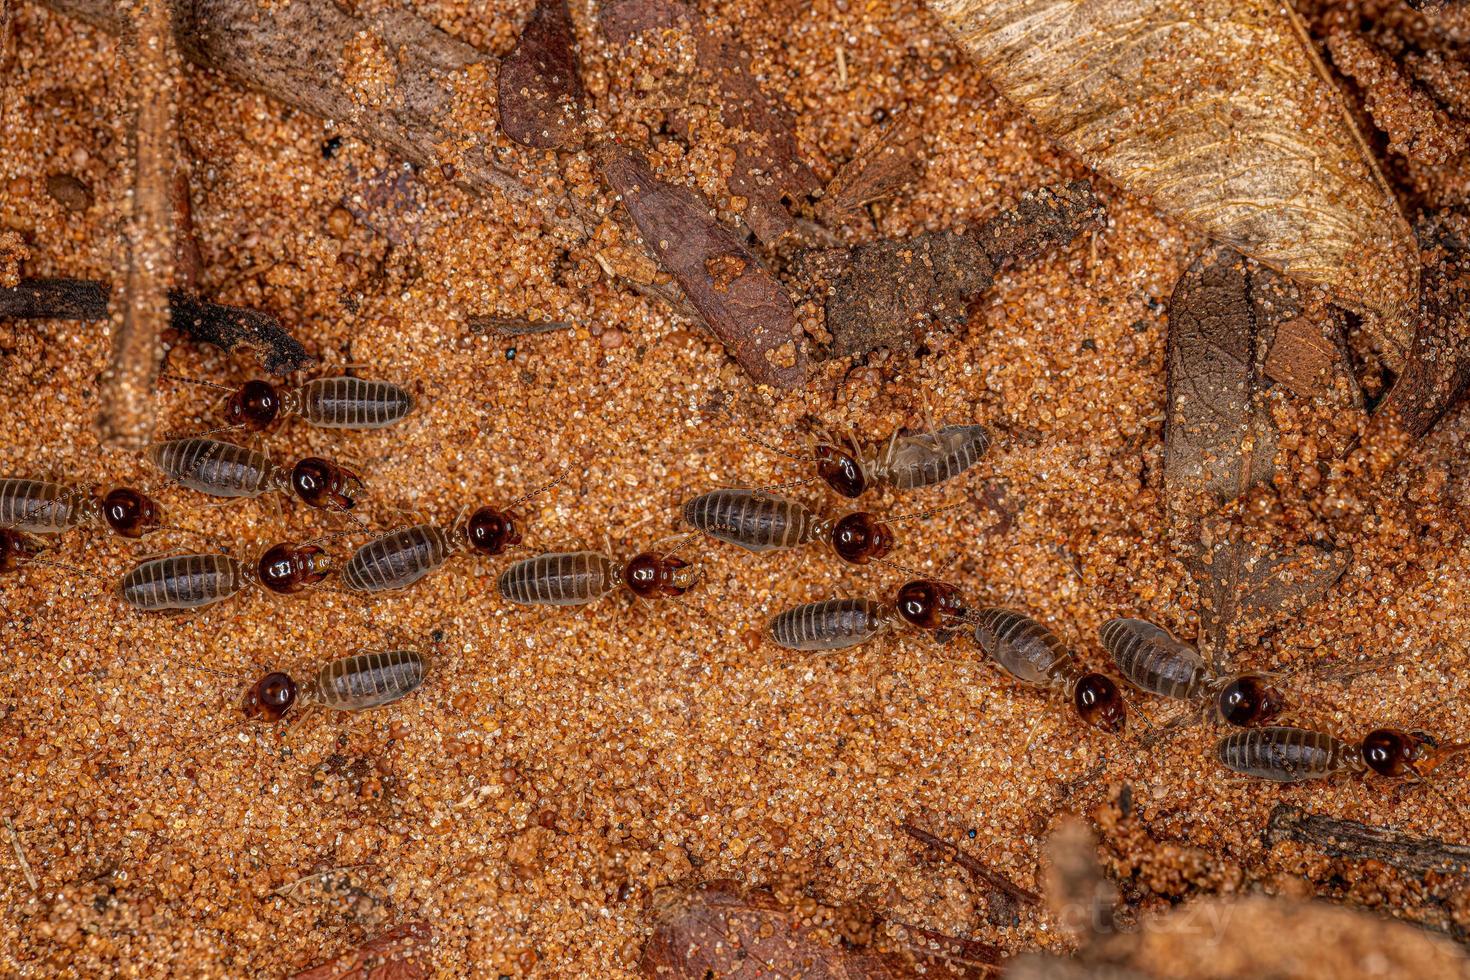 volwassen hoger termieten foto